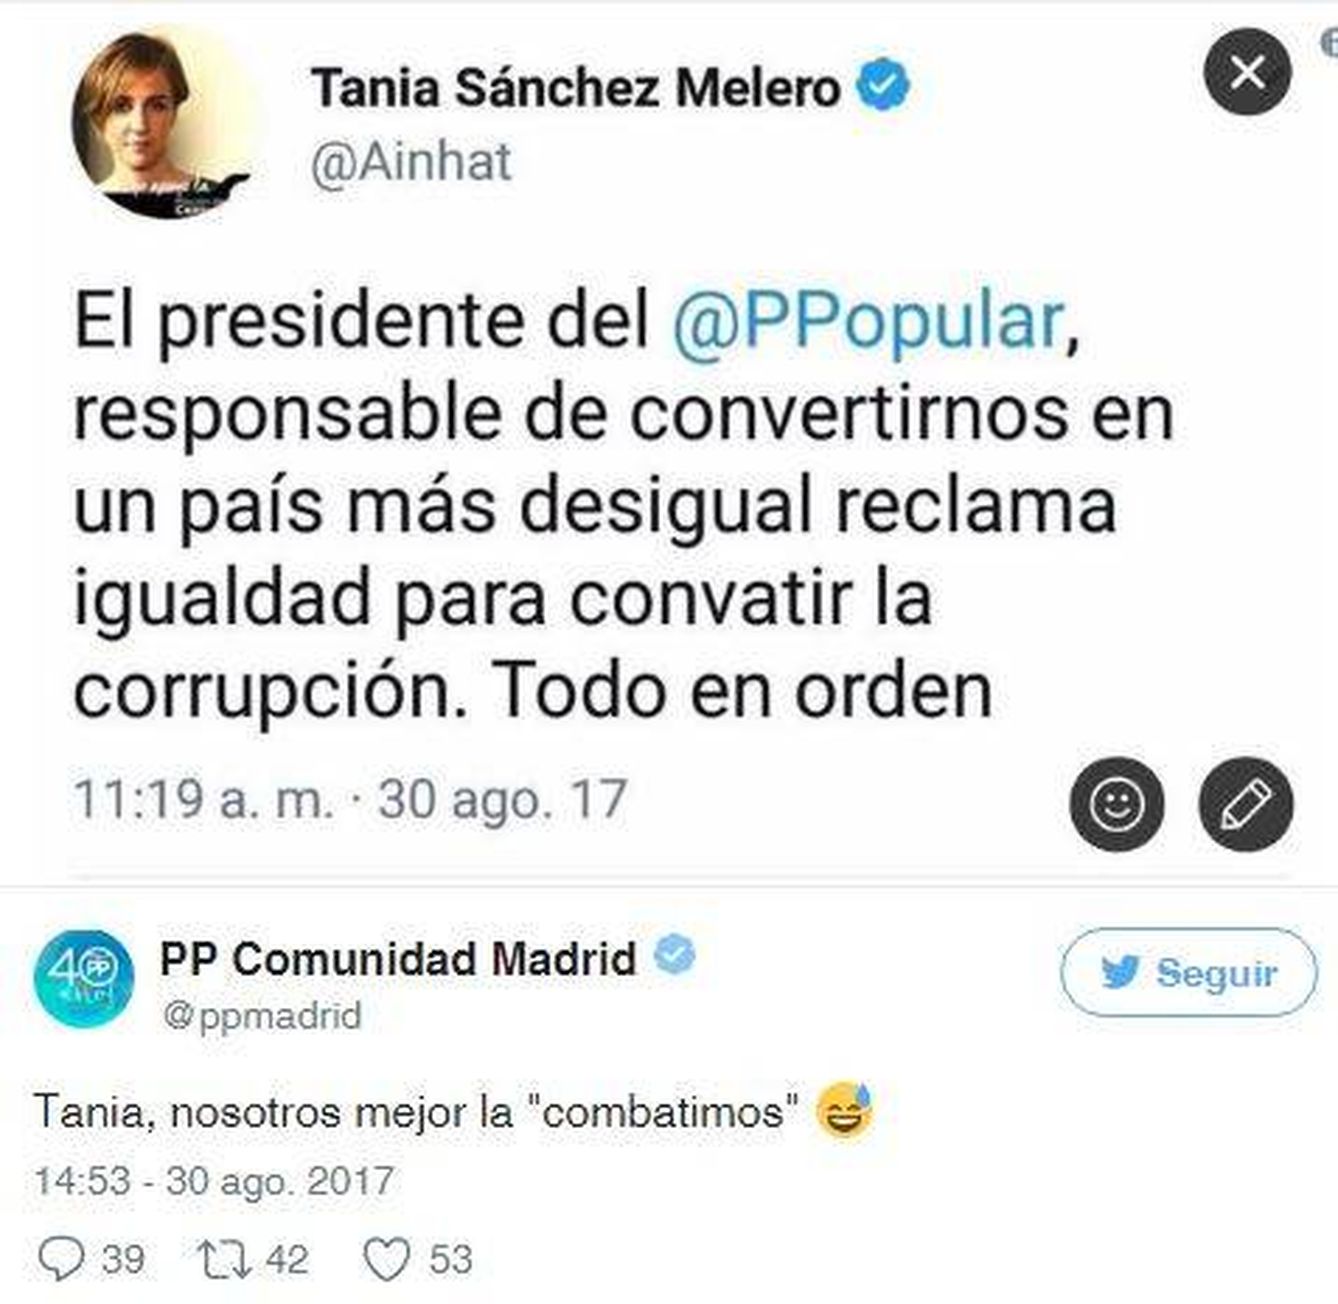 Tania Sánchez en su perfil oficial de Twitter.